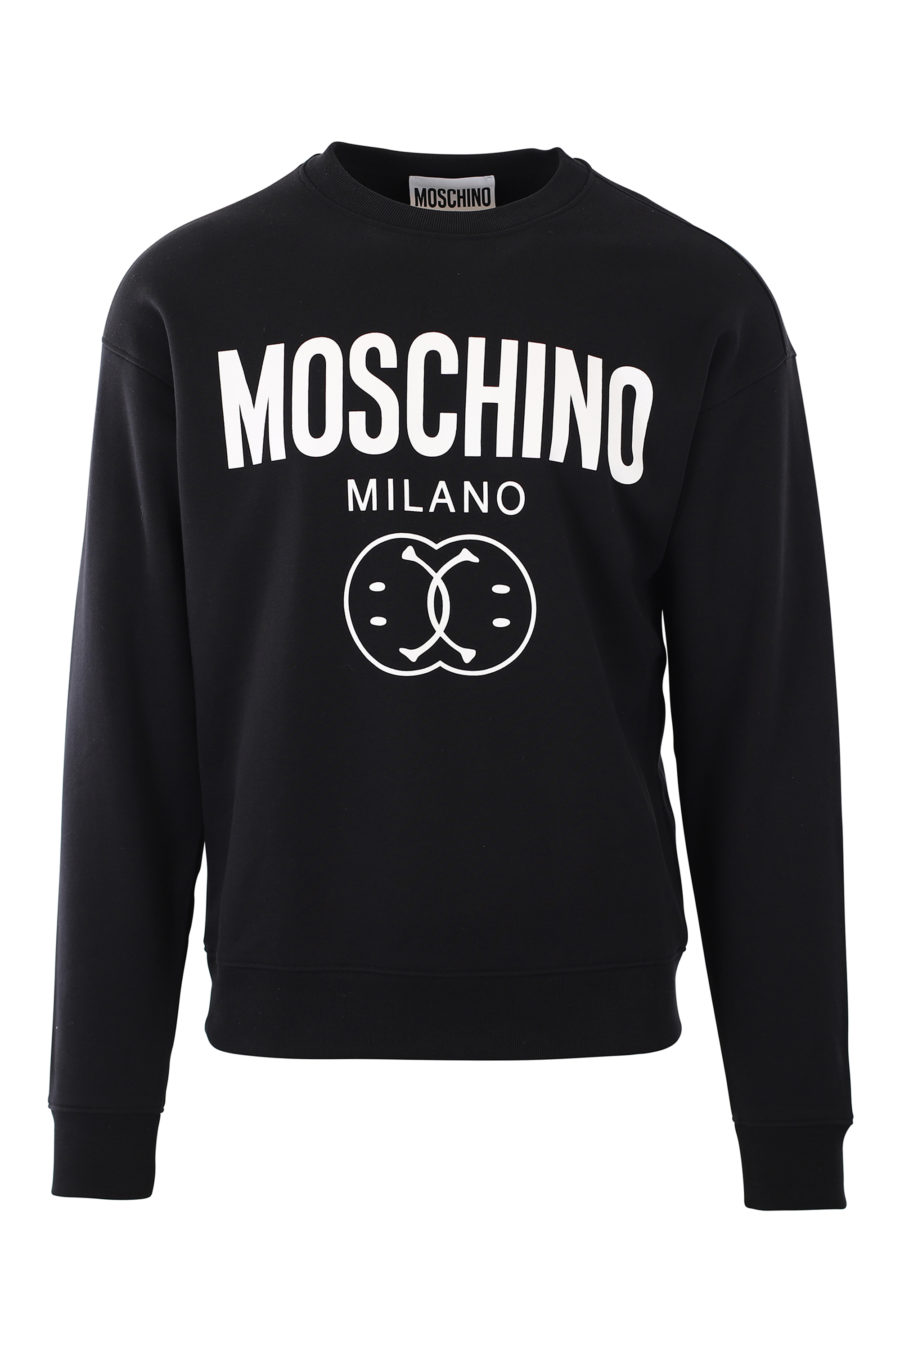 Black sweatshirt with milano "smiley" logo - IMG 2416